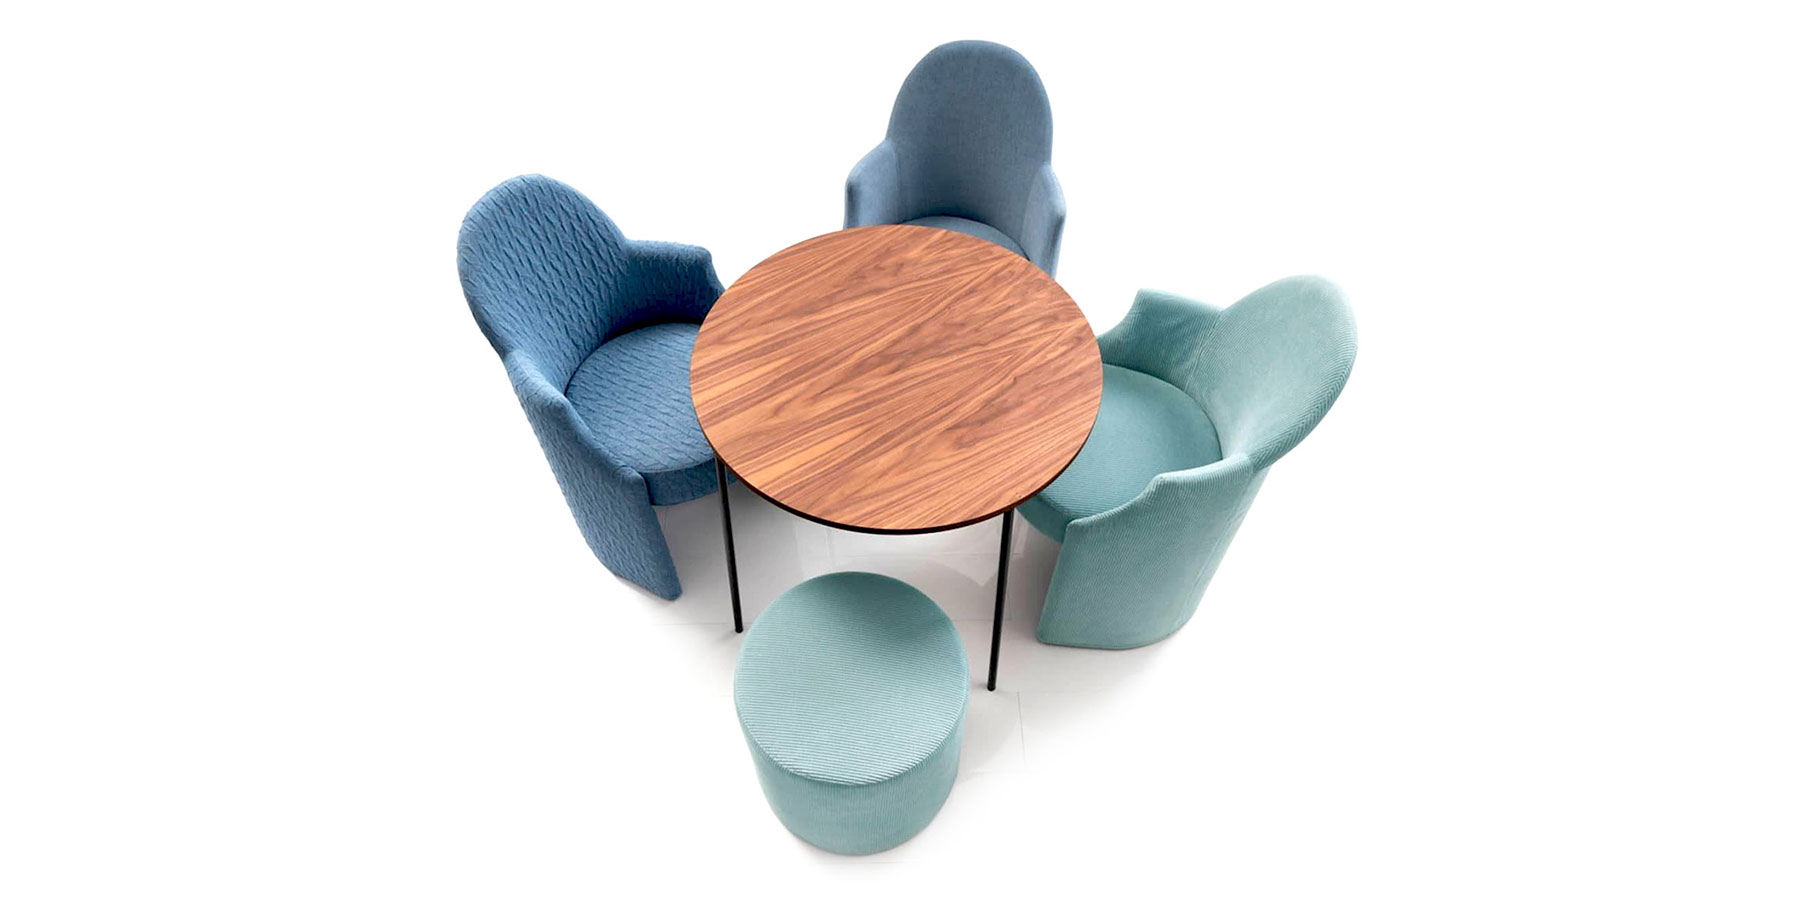 Drei Sessel mit runder Sitzbasis und ein runder Hocker stehen um einen runden Holztisch. Der Hintergrund ist weiß. Die Sessel sind blau, ein weiterer Sessel und der Hocker sind türkis.